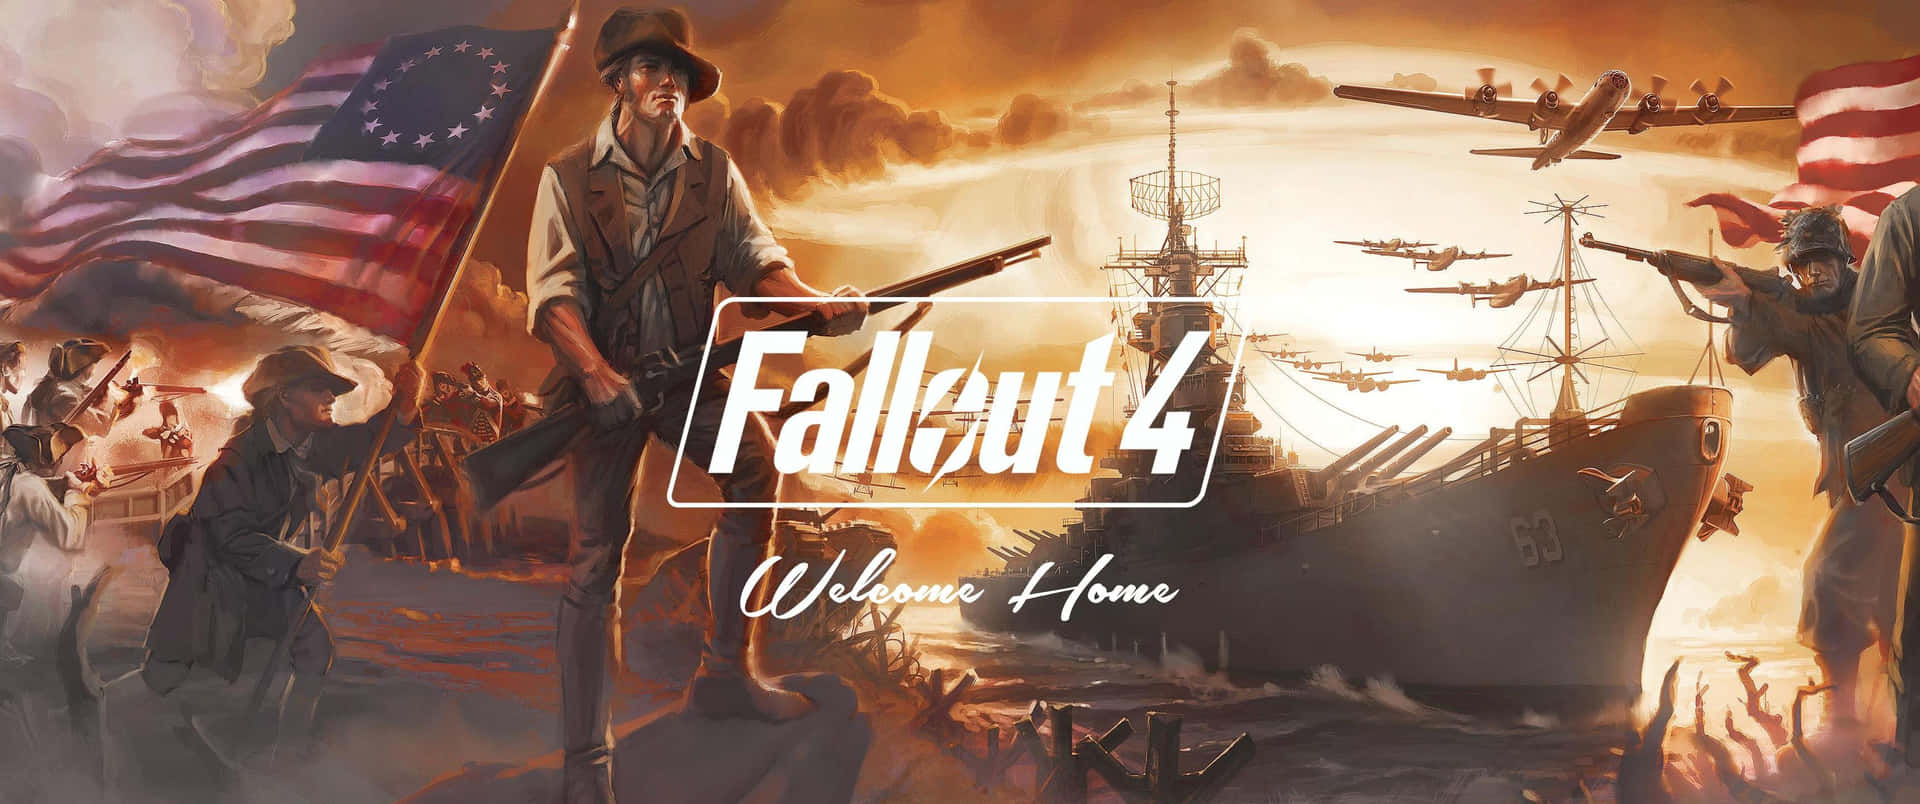 Sfondodi Gioco Fallout 4 In 3440x1440p.